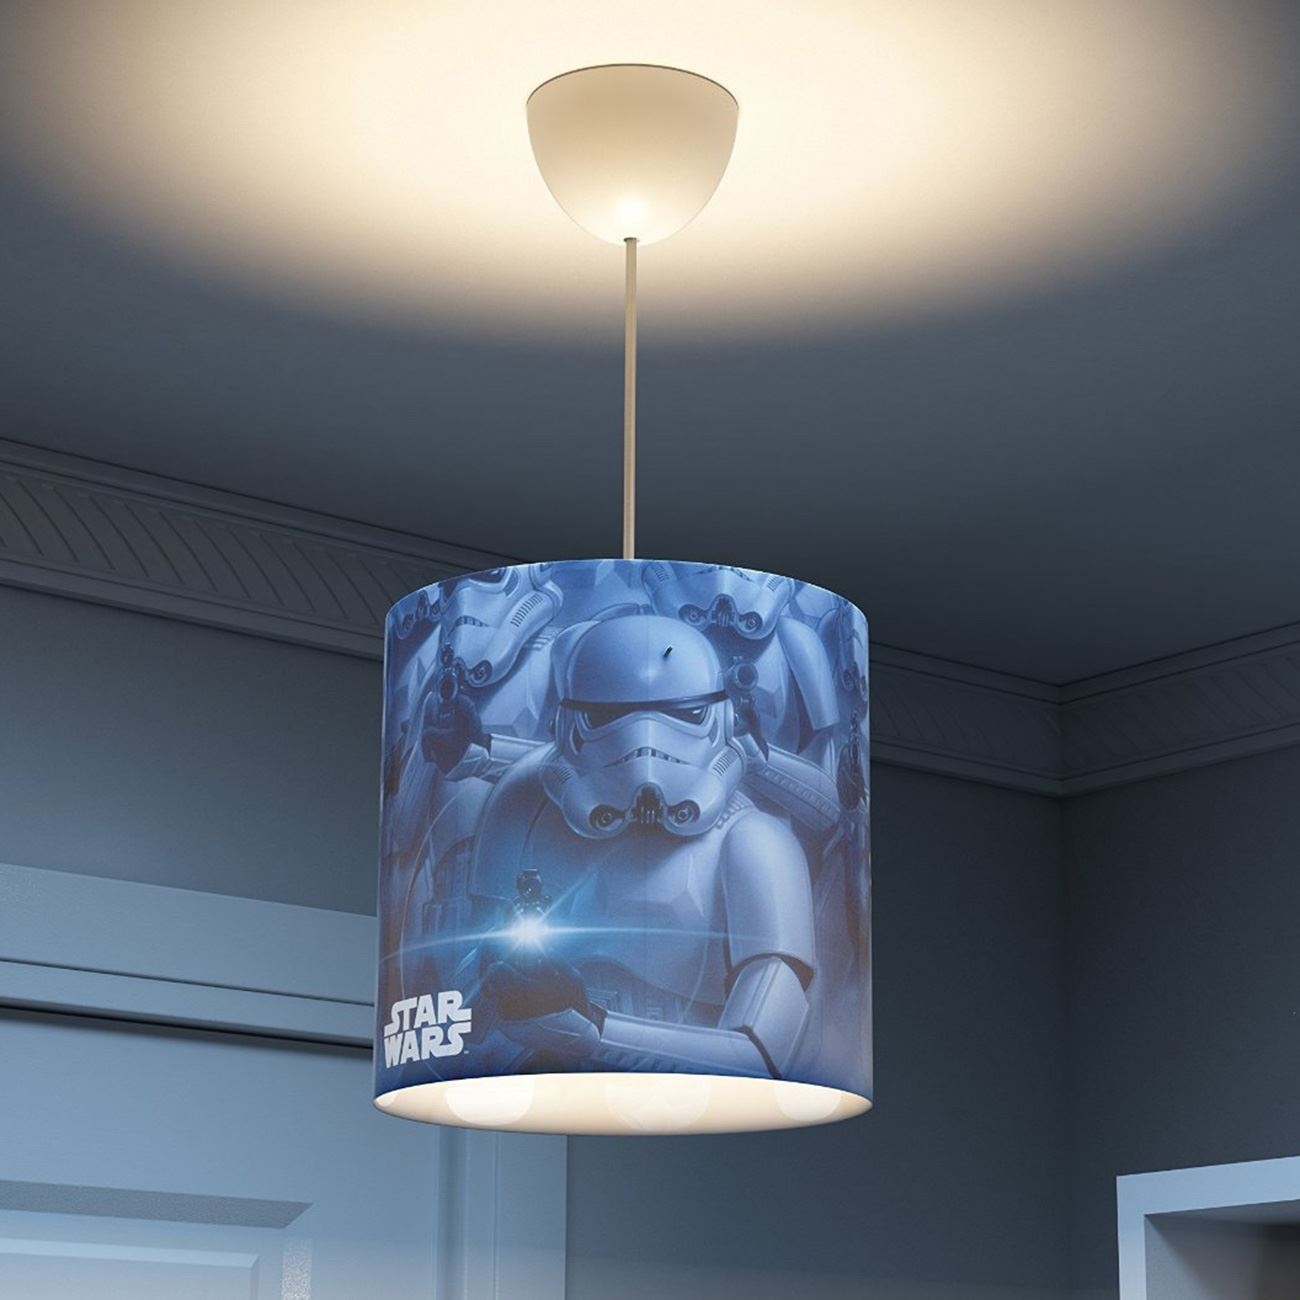 Star Wars Ceiling Light Fixture